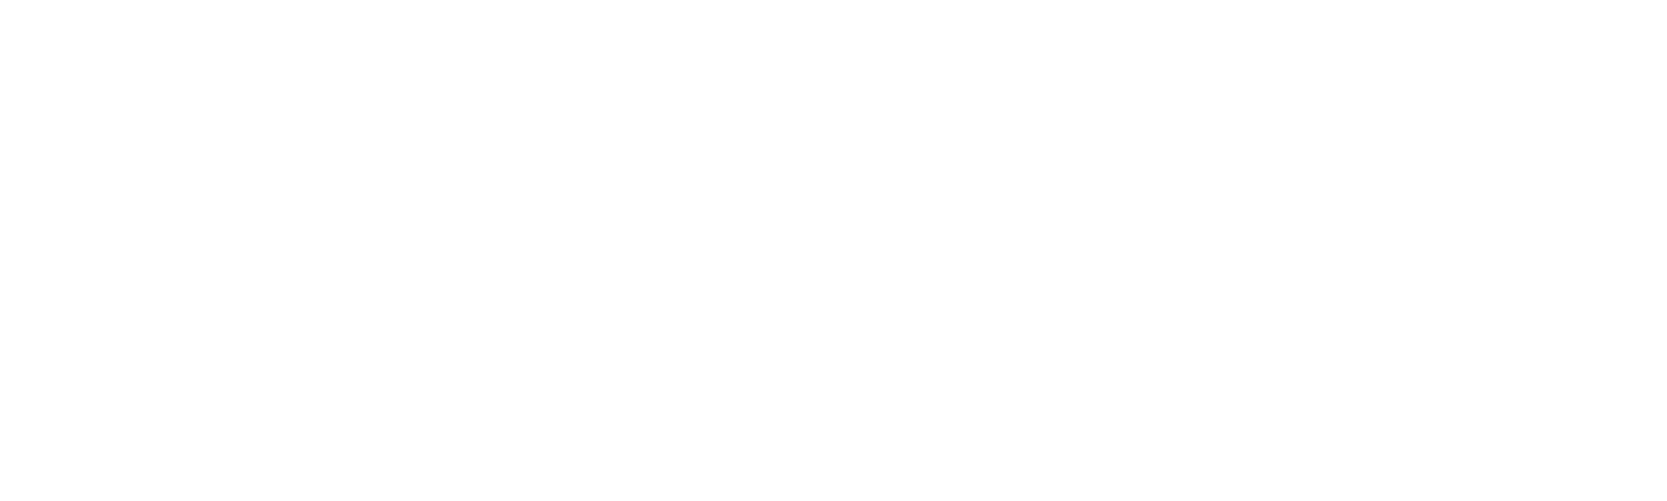 Vorlon logo_White (PNG)